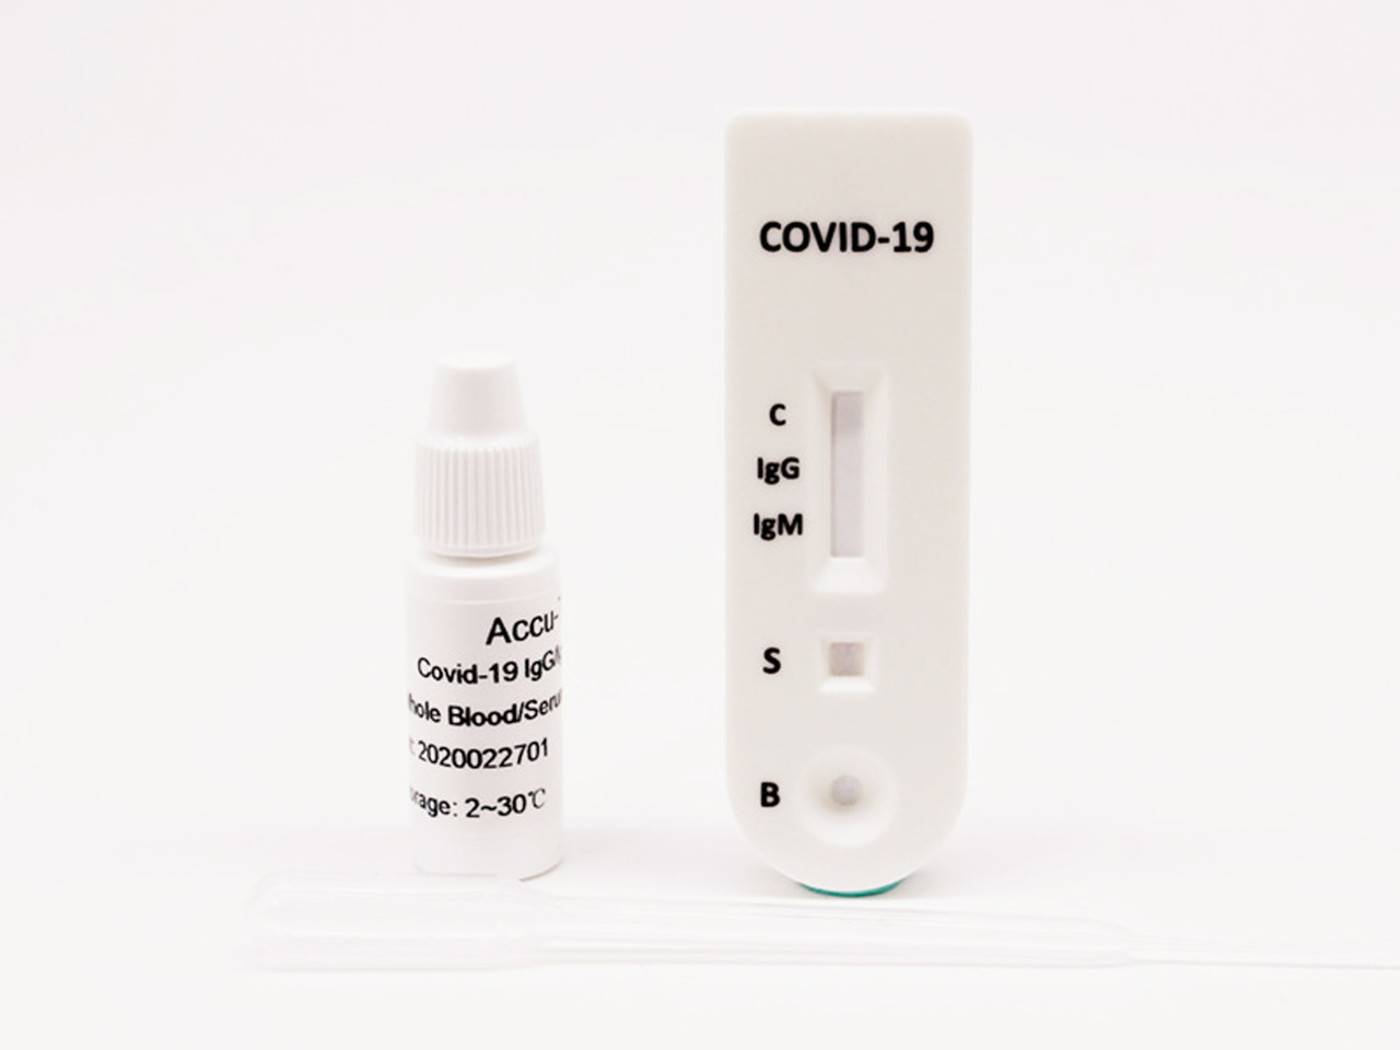 Testy do wykrywania obecności koronawirusa SARS-CoV-2 (COVID-19) nal von minden GmbH TESTY KORONAWIRUS